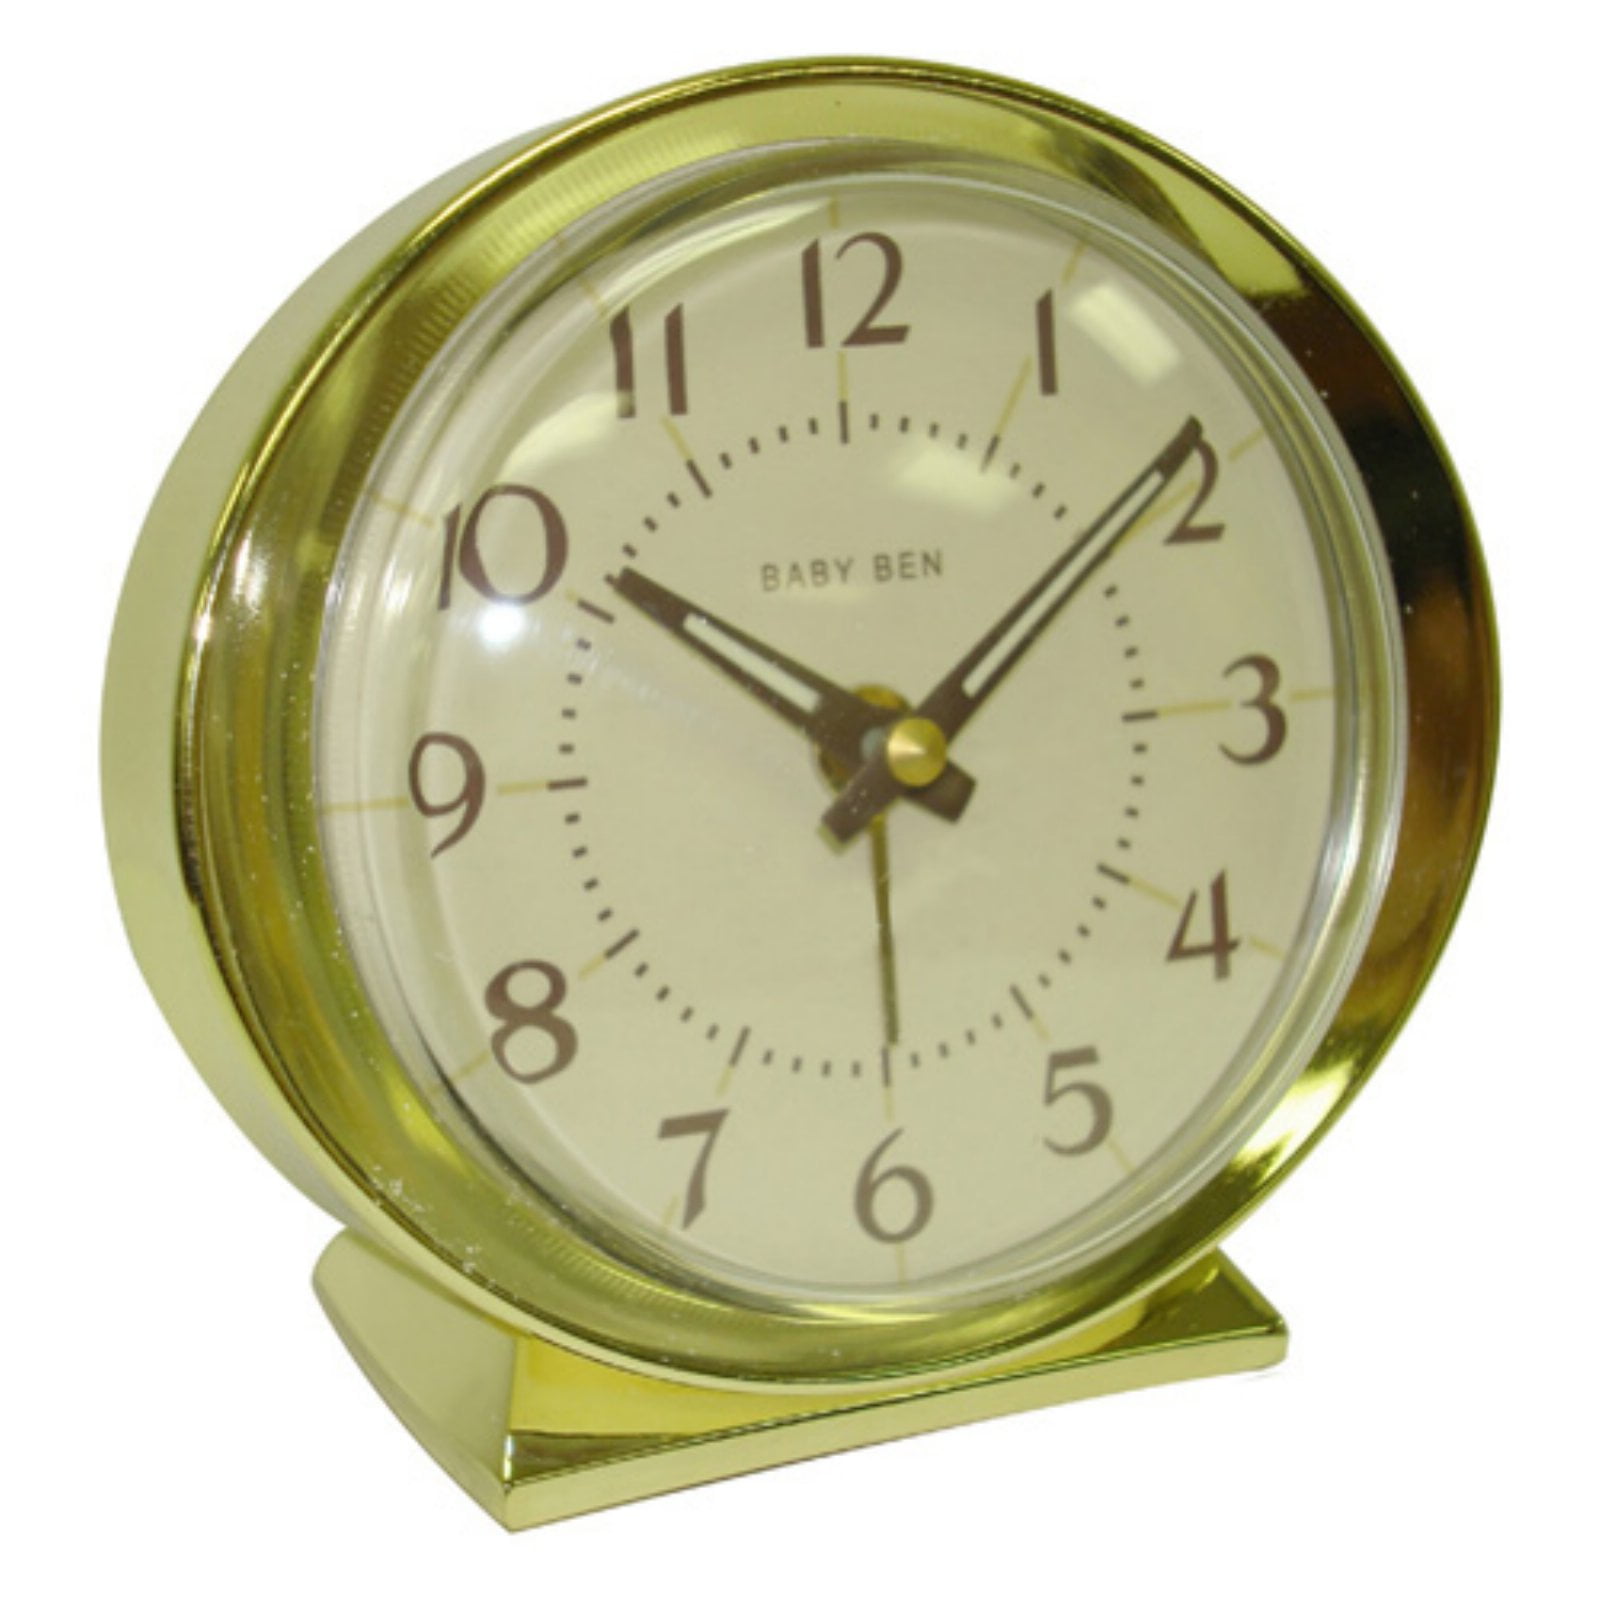 Миндаль часы. Baby Ben Westclox будильник. Часы Westclox 1960. Часы-будильник Биг-Бен. Westclox часы с будильником круглые.